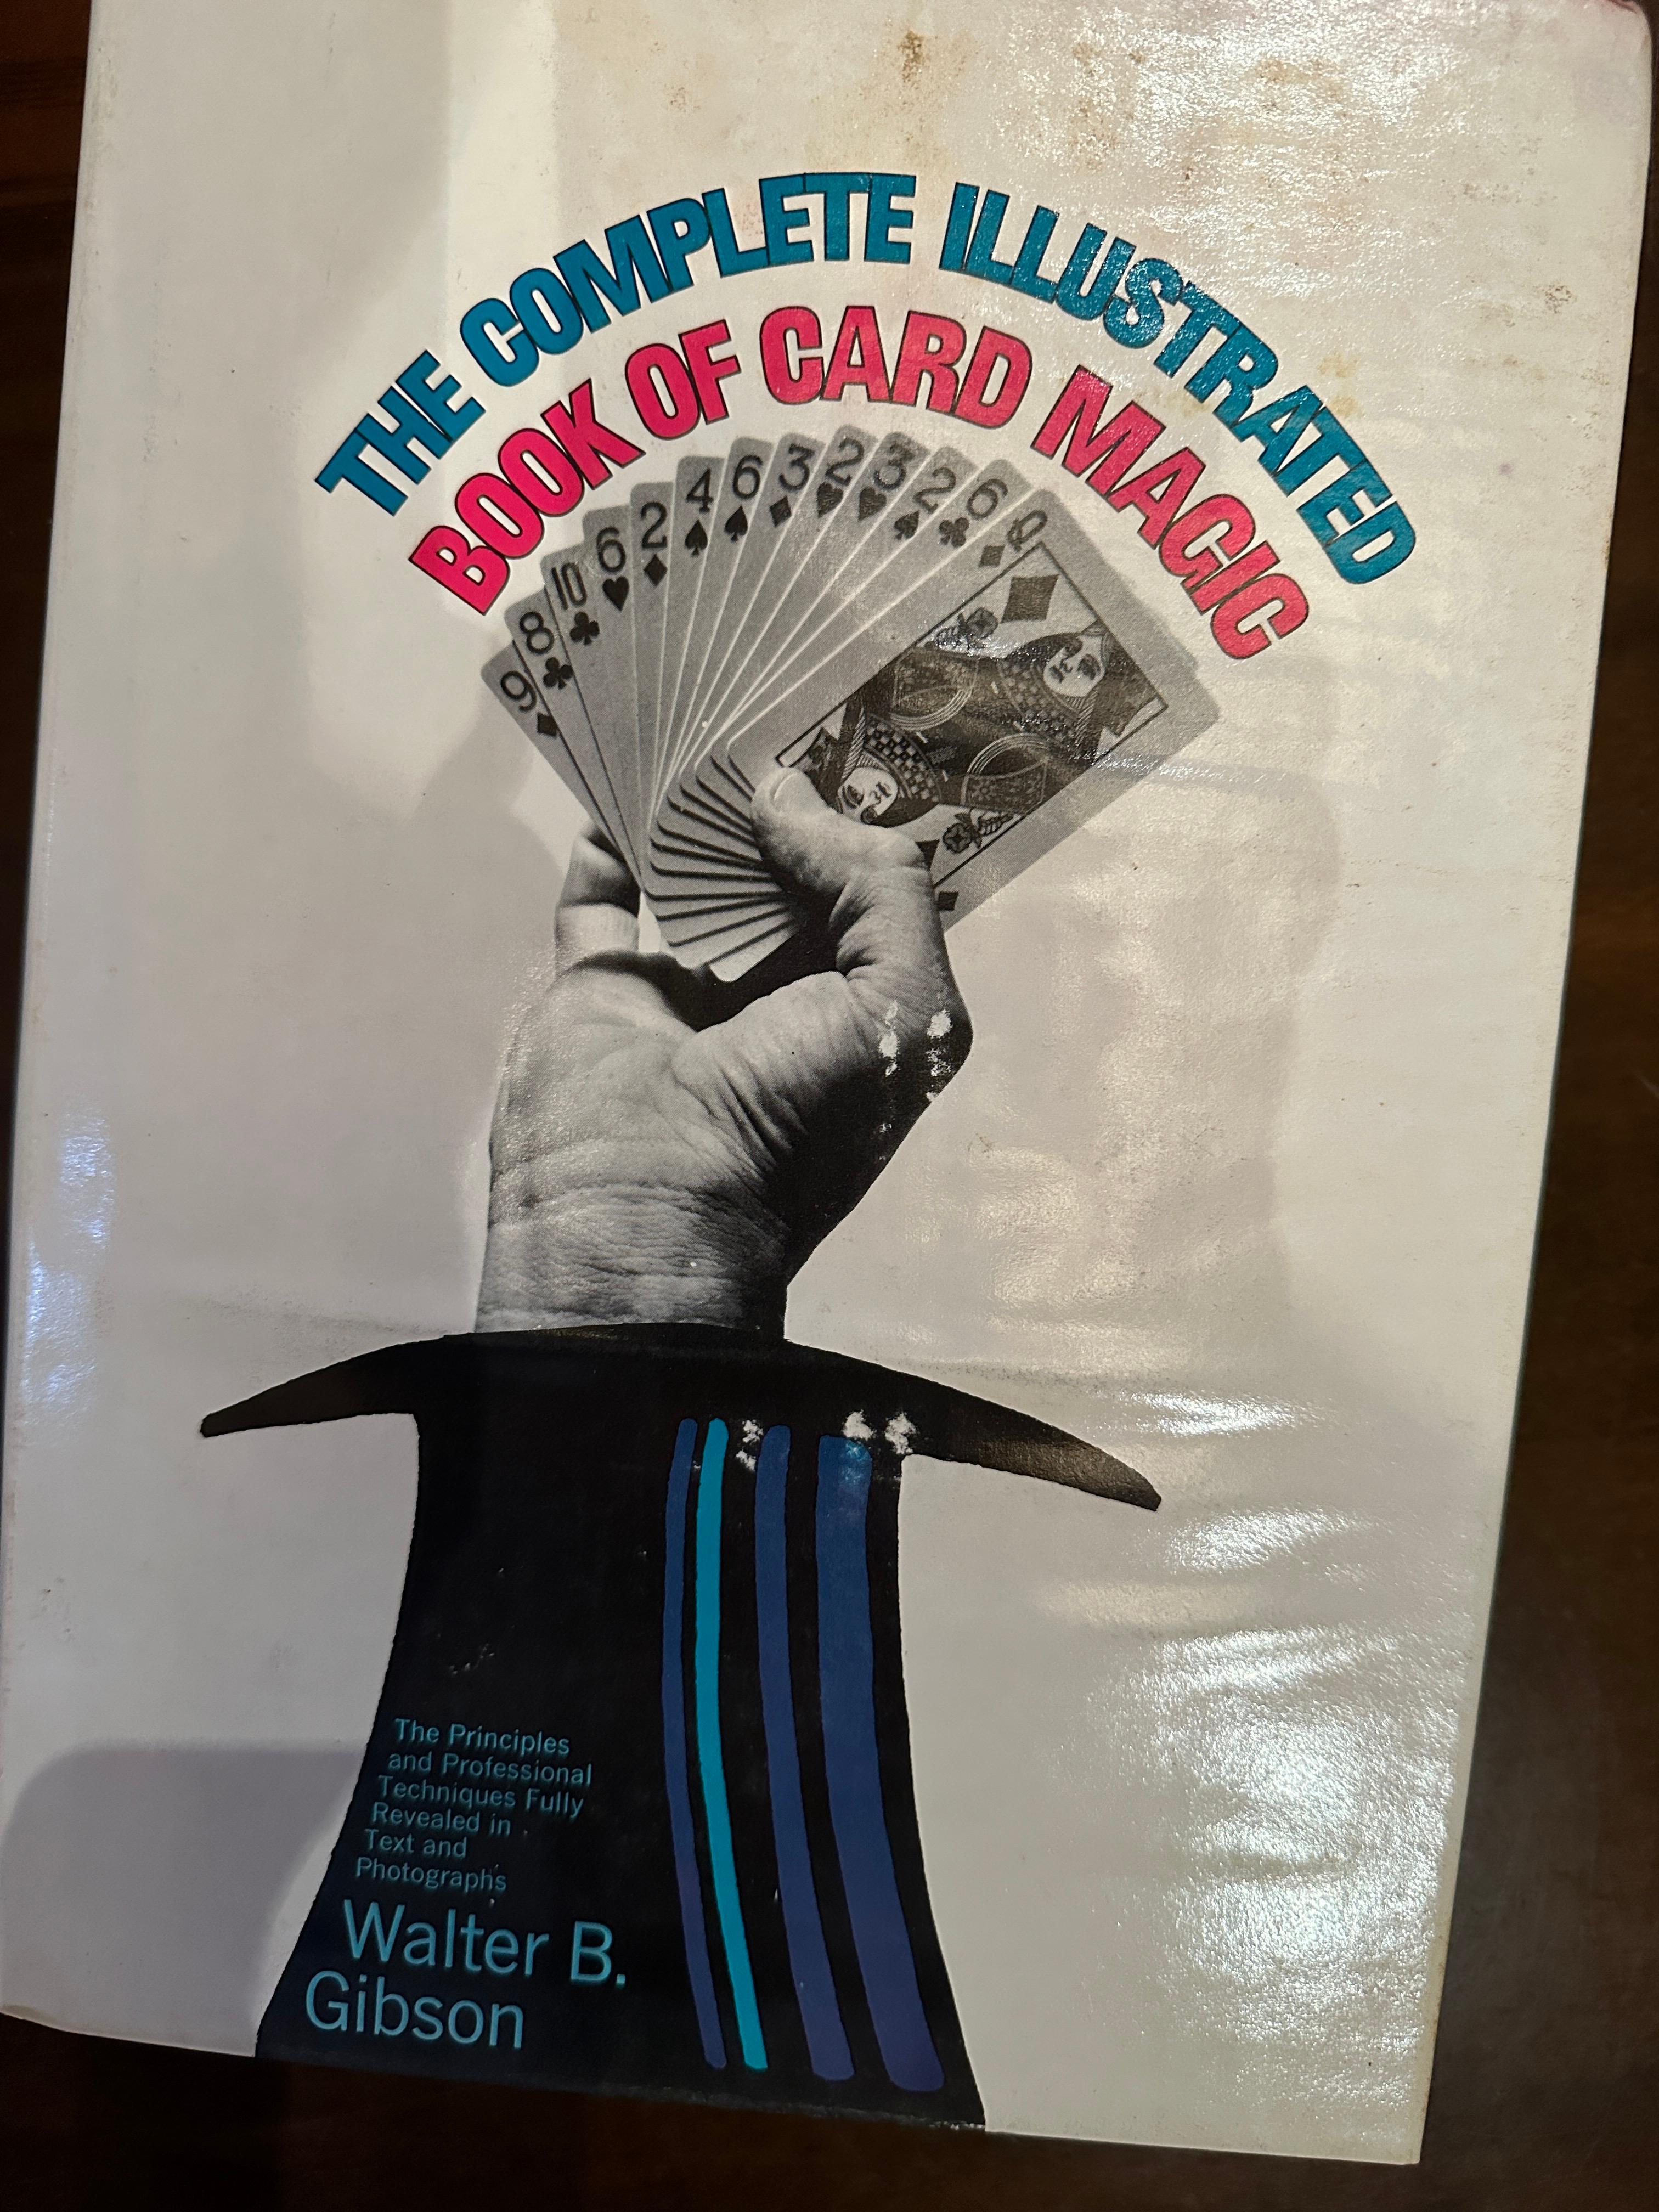 Le livre complet illustré de la magie des cartes par Walter B. Gibson 1969

Il ne s'agit pas d'une des nombreuses réimpressions publiées ultérieurement.  Il s'agit du véritable livre de 1969 !

M. Gibson a écrit des dizaines de grands livres sur la